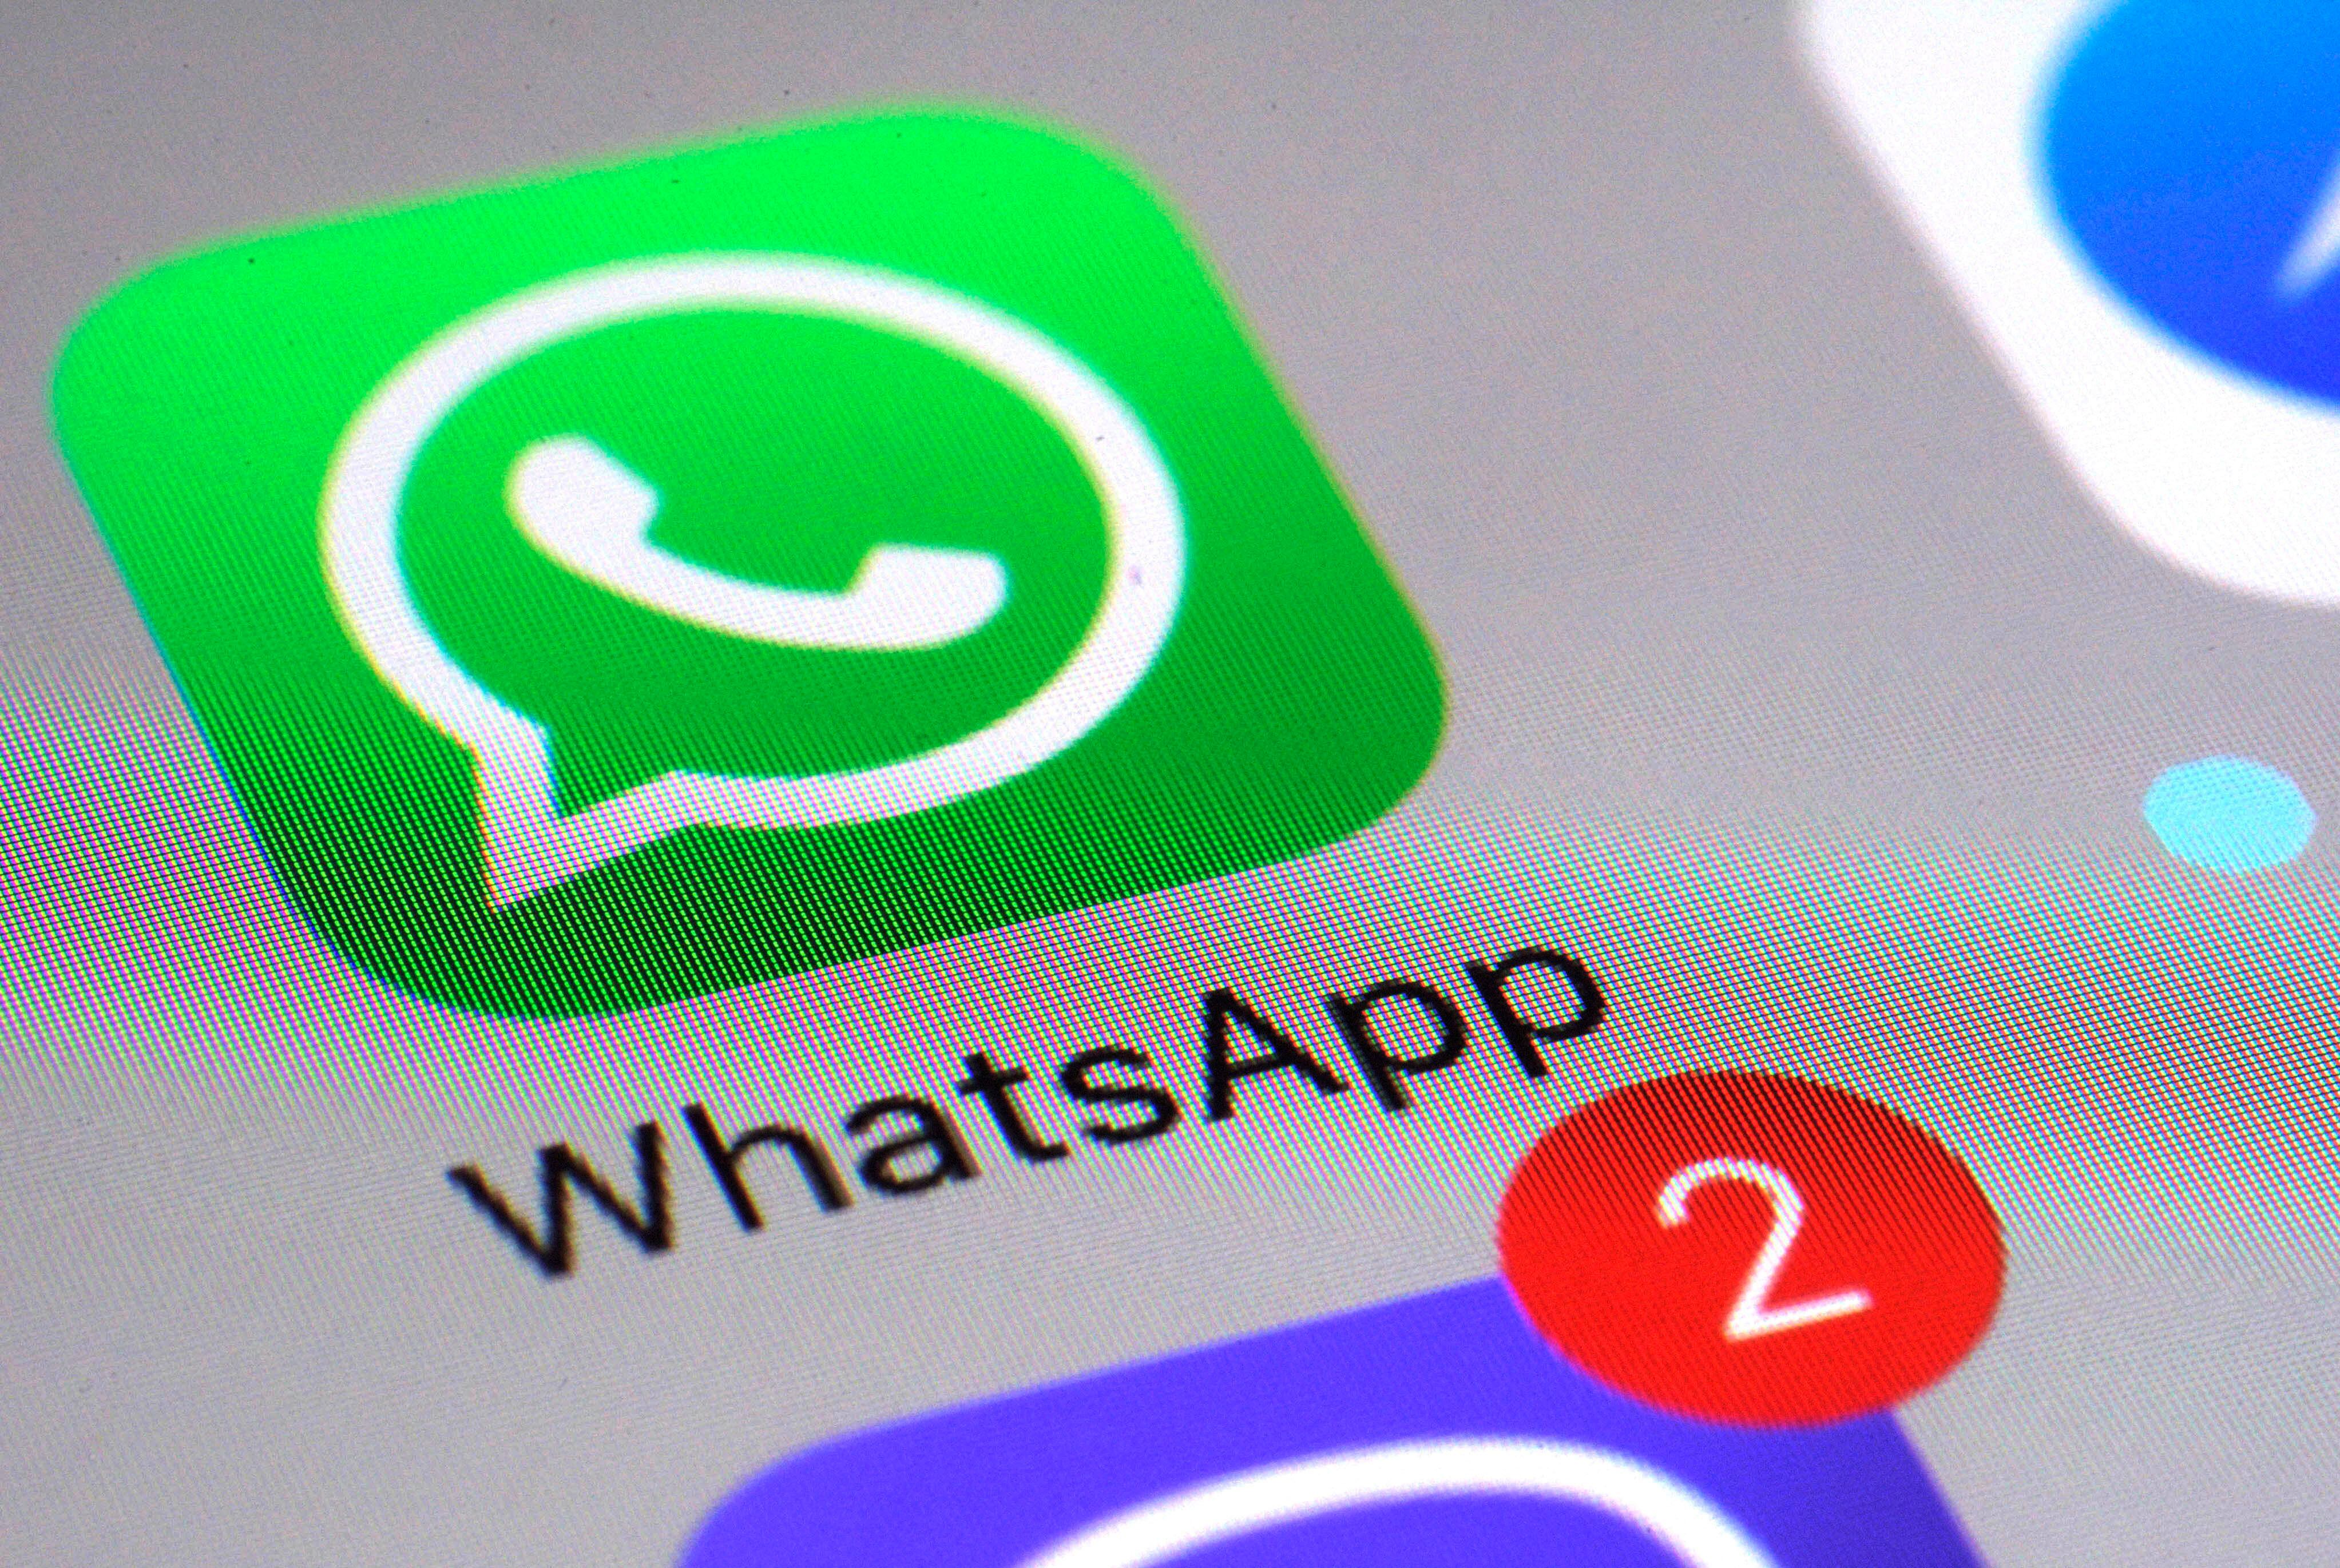 WhatsApp busca que el proceso para encontrar la conversación adecuada sea un proceso rápido, fluido y simple. (AP Foto/Patrick Sison)